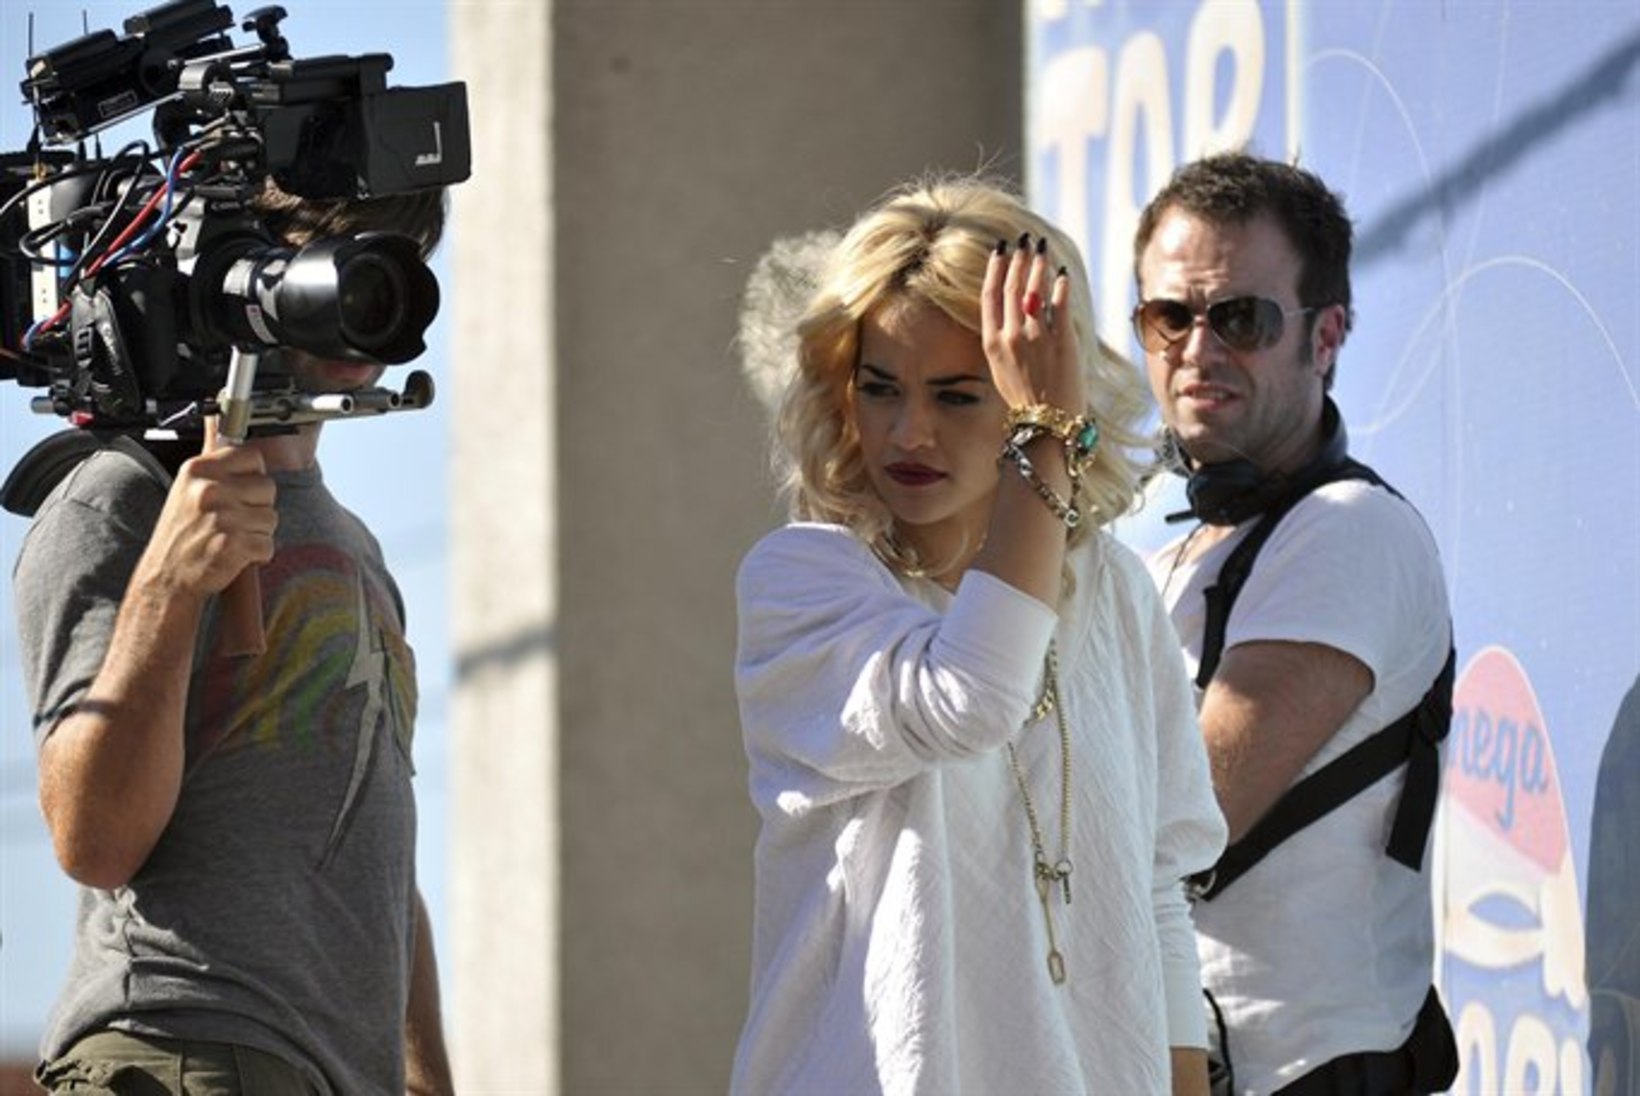 FOTOD JA VIDEO: Rita Ora filmib uut muuvit kodumaal Kosovos